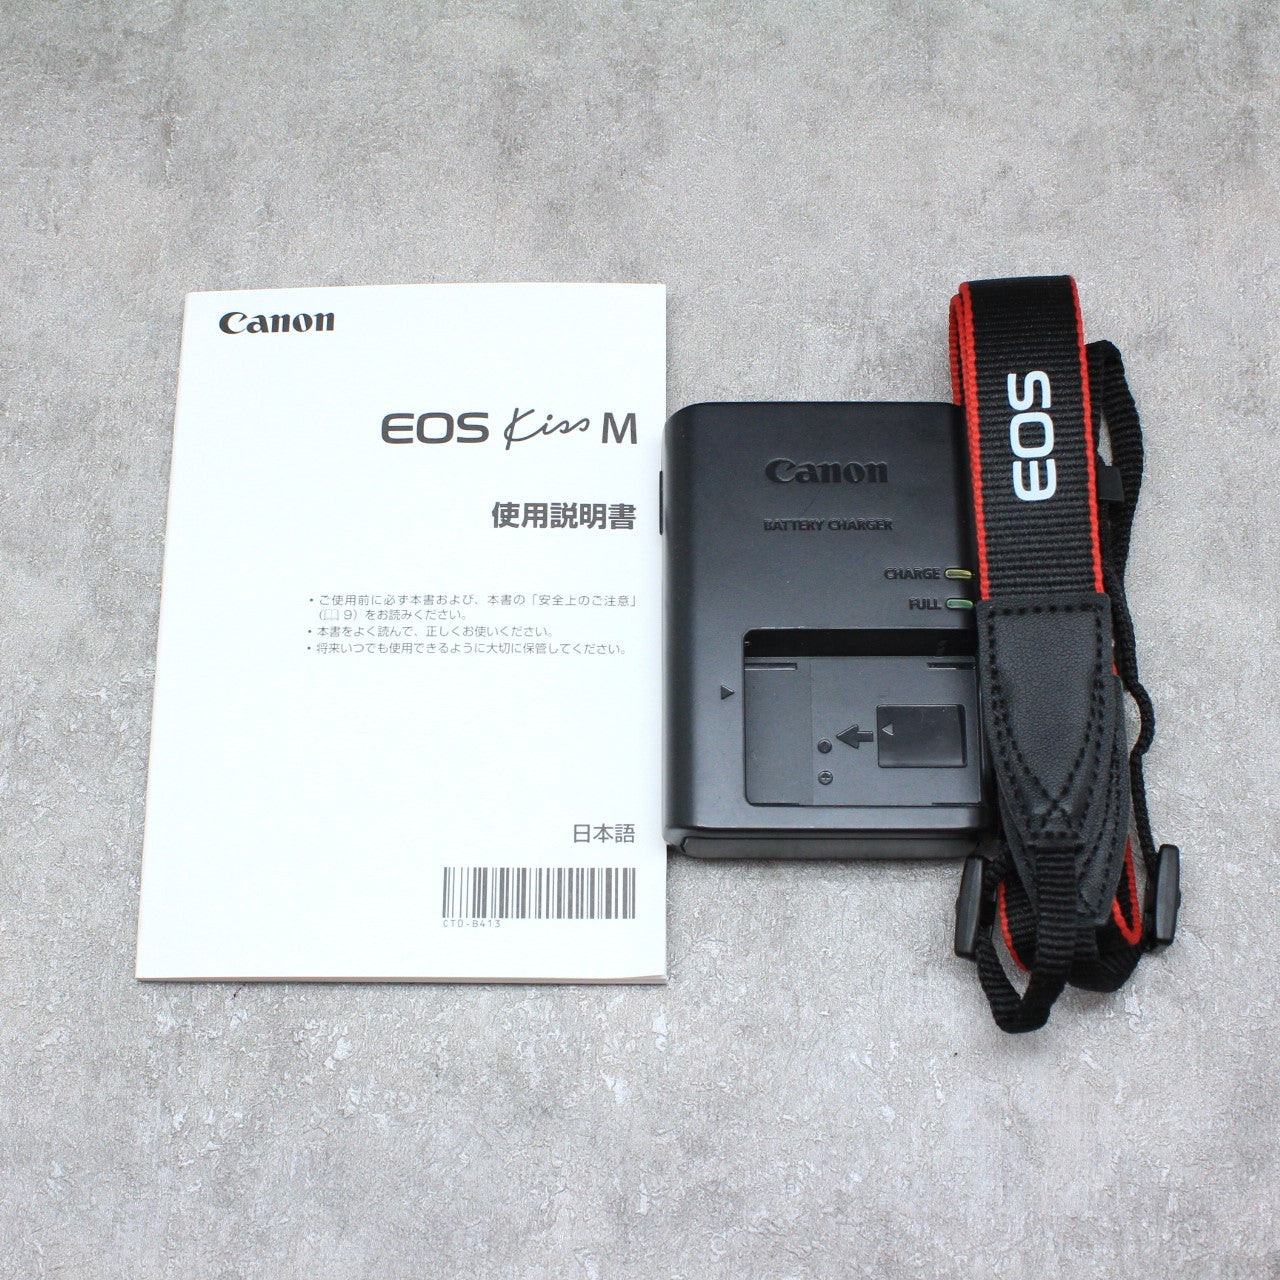 中古品 Canon EOS Kiss M 標準レンズキット ハヤト商会